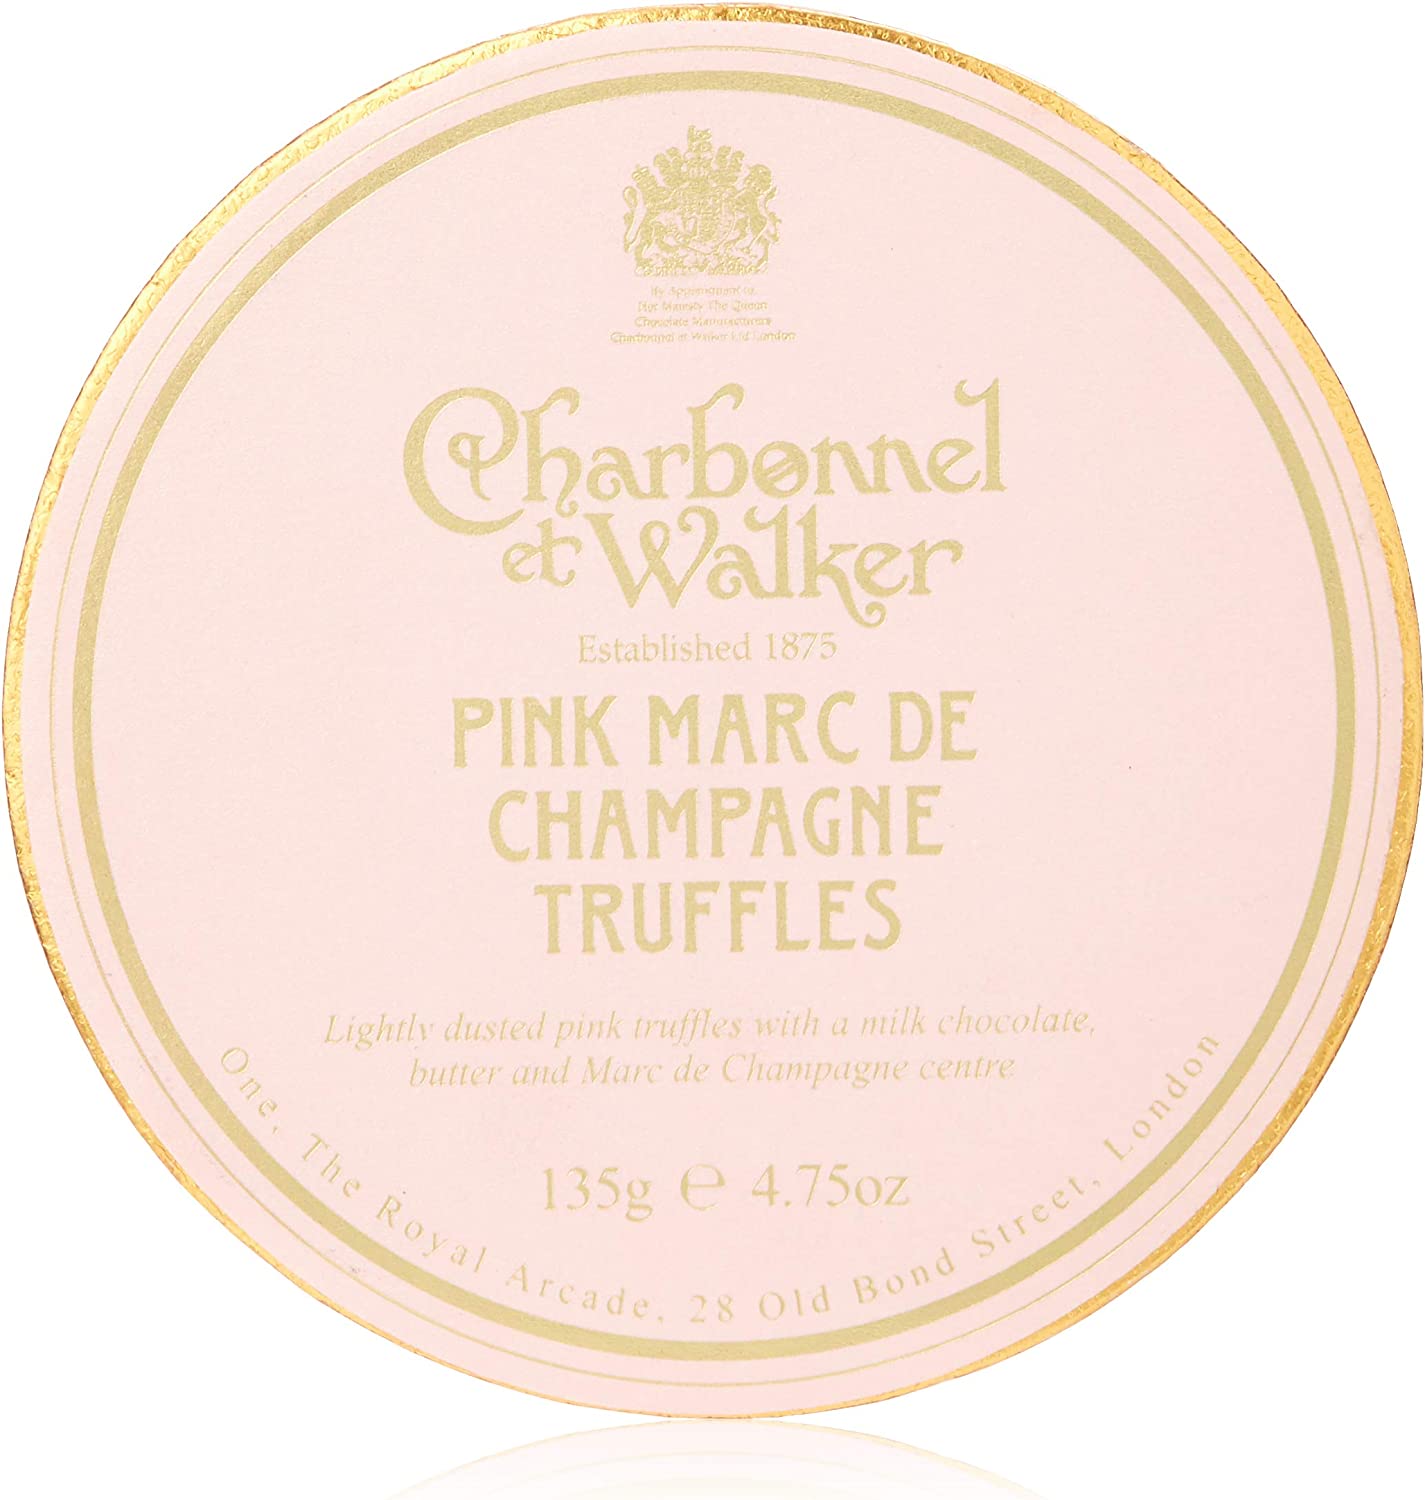 Charbonnel Et Walker Pink Marc De Champagne Truffles 135g RRP 16 CLEARANCE XL 7.99